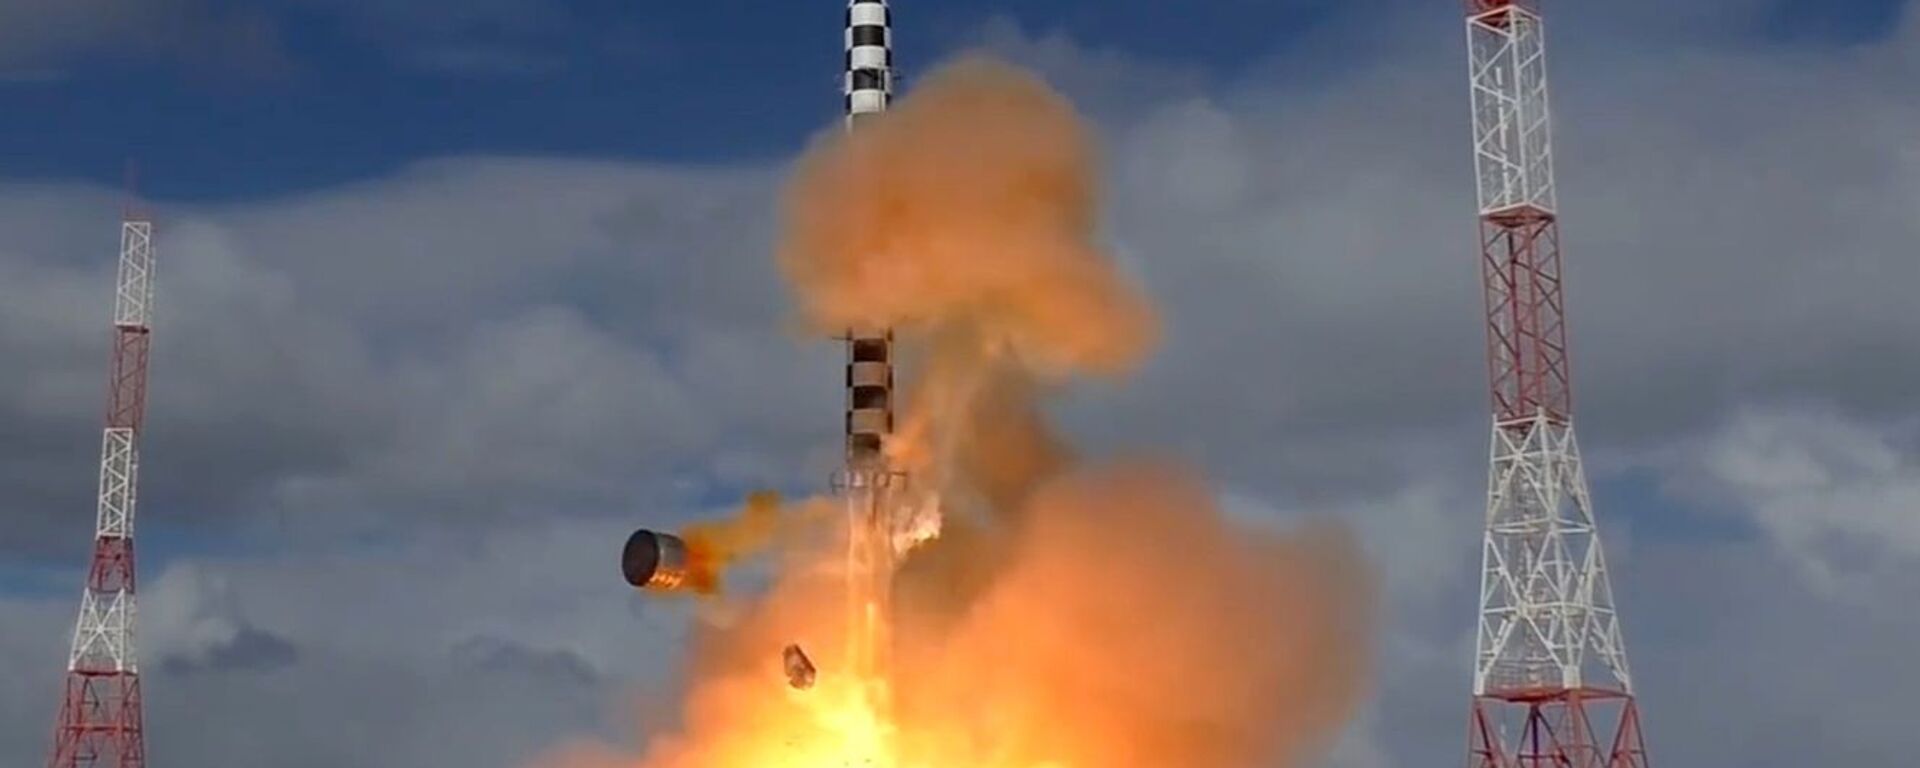 Запуск ракеты «Сармат» с космодрома «Плесецк» - Sputnik Латвия, 1920, 21.12.2021